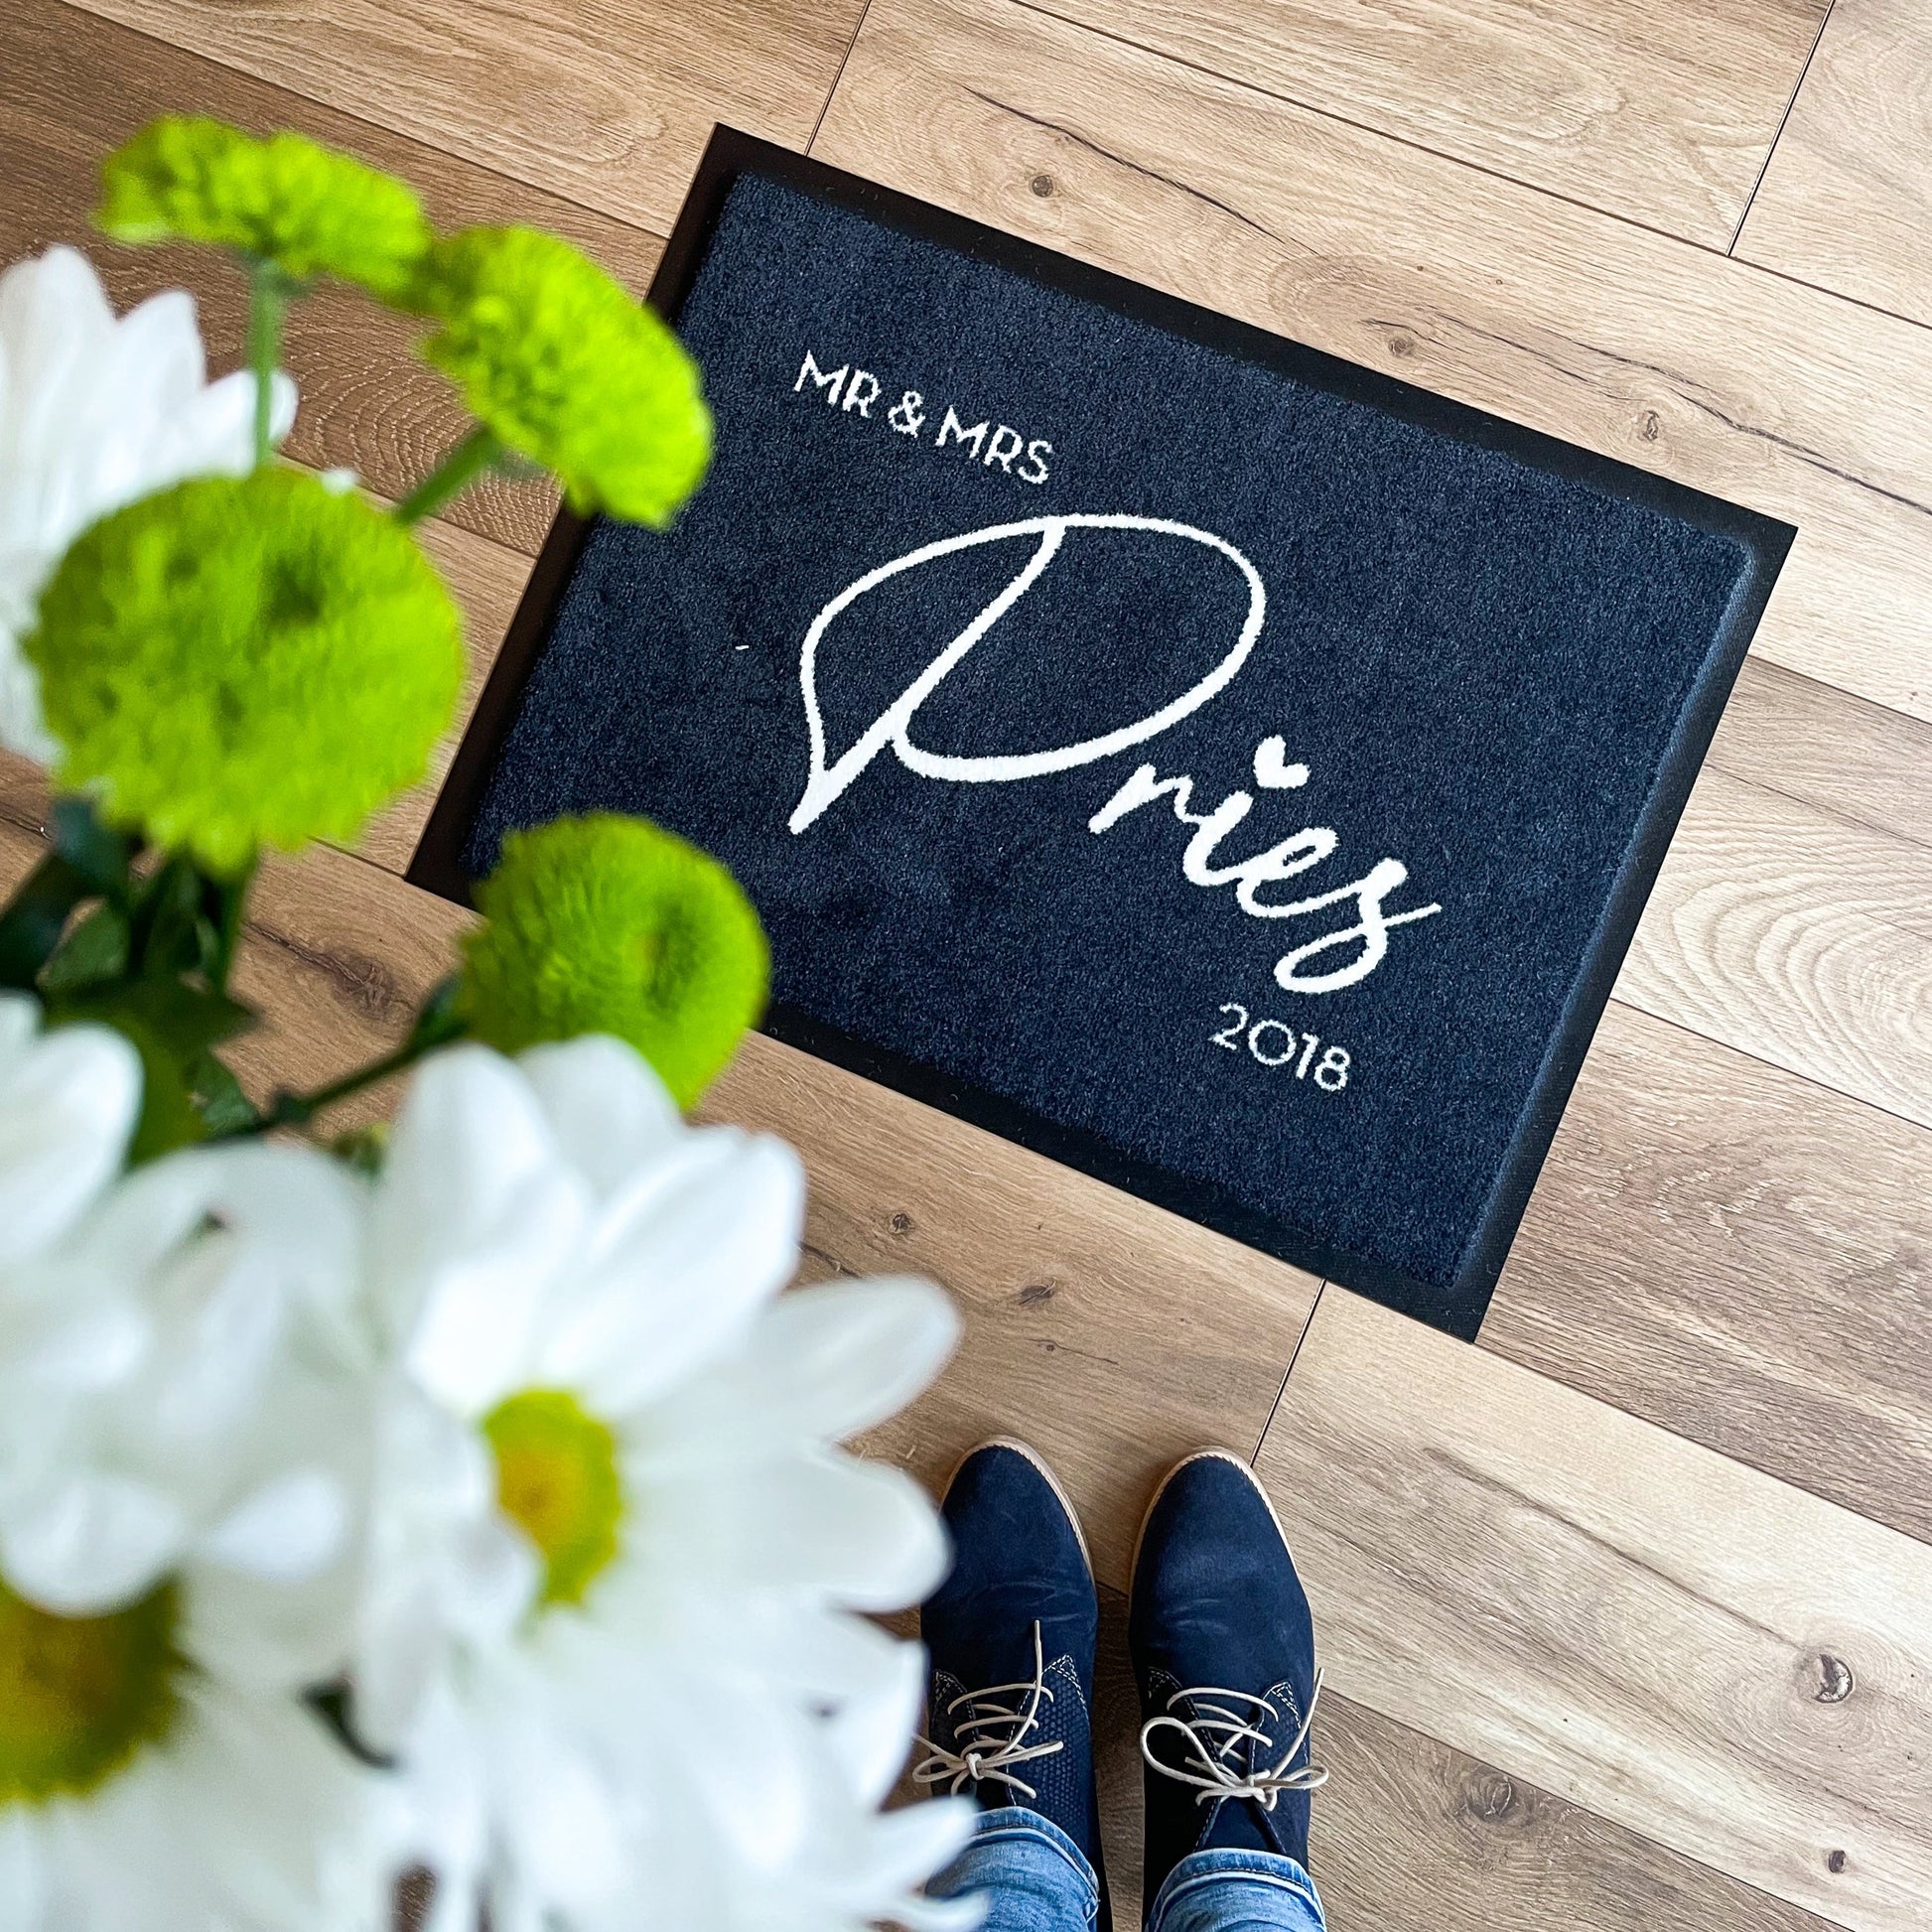 Perfektes Geschenk zur Hochzeit personalisierte Fußmatte mit Mr & Mrs, dem Familiennamen und dem Hochzeitsjahr